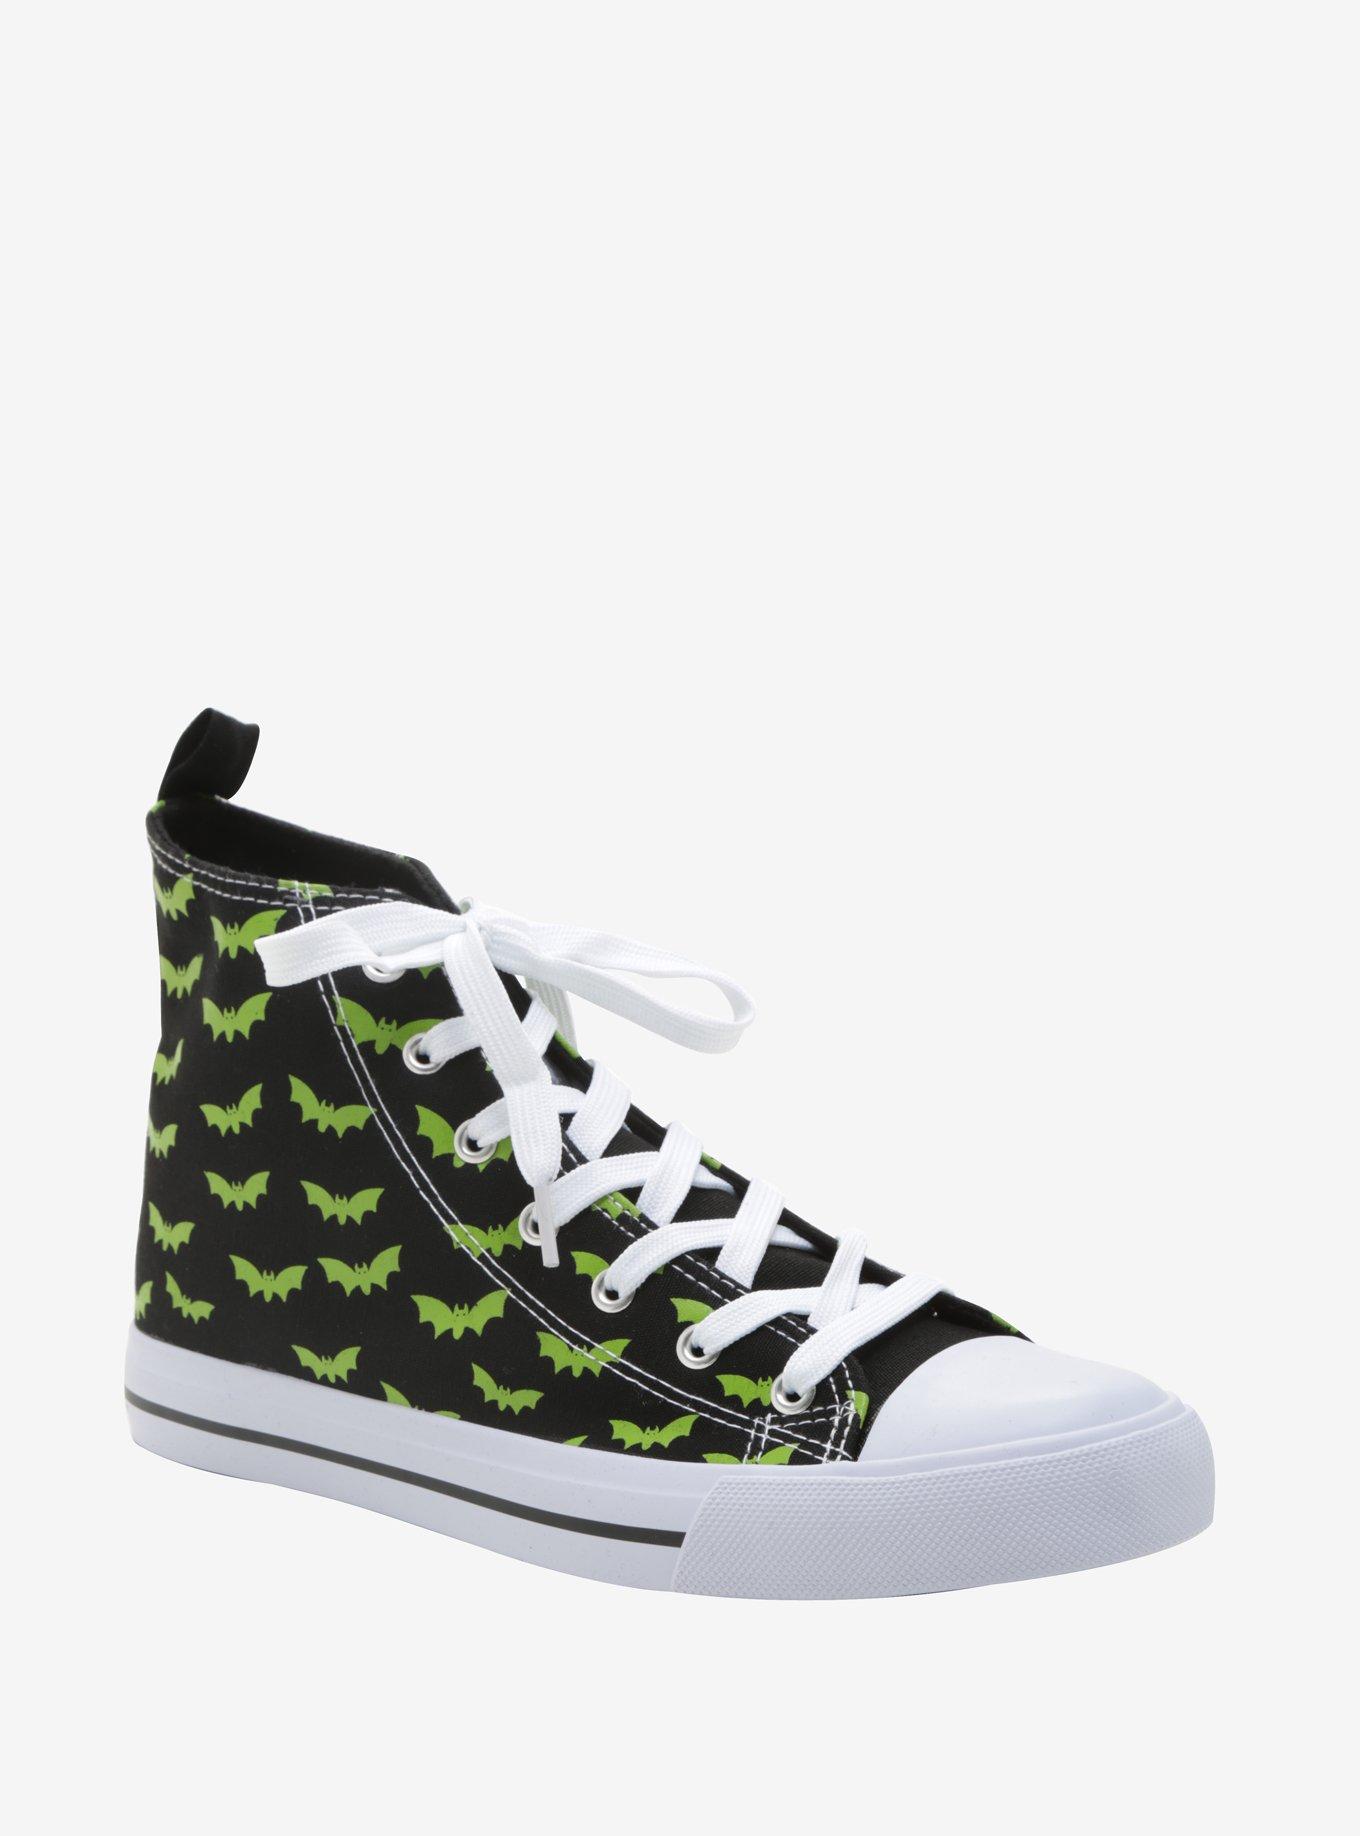 Black & Green Bat Print Hi-Top Sneakers, MULTI, hi-res